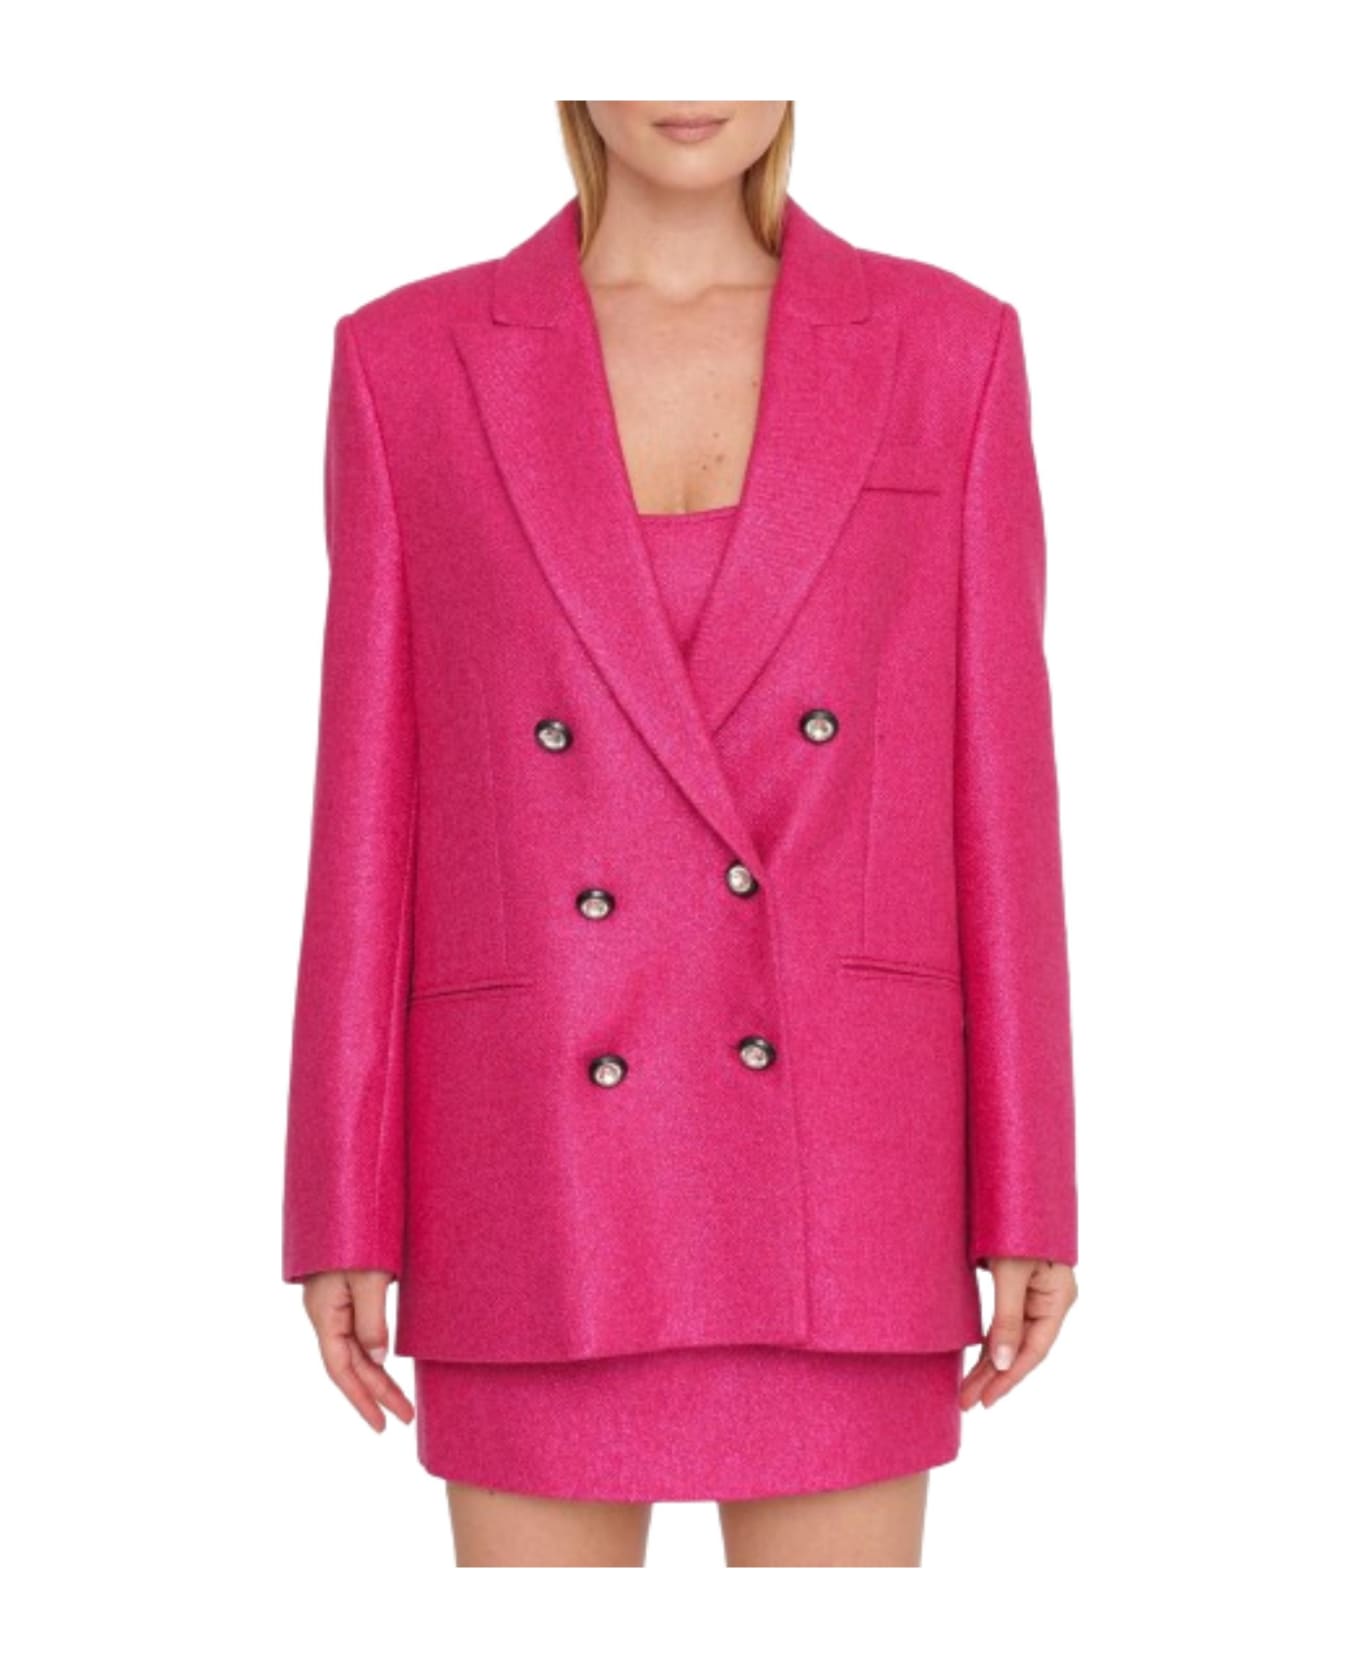 Chiara Ferragni Jacket - Pink